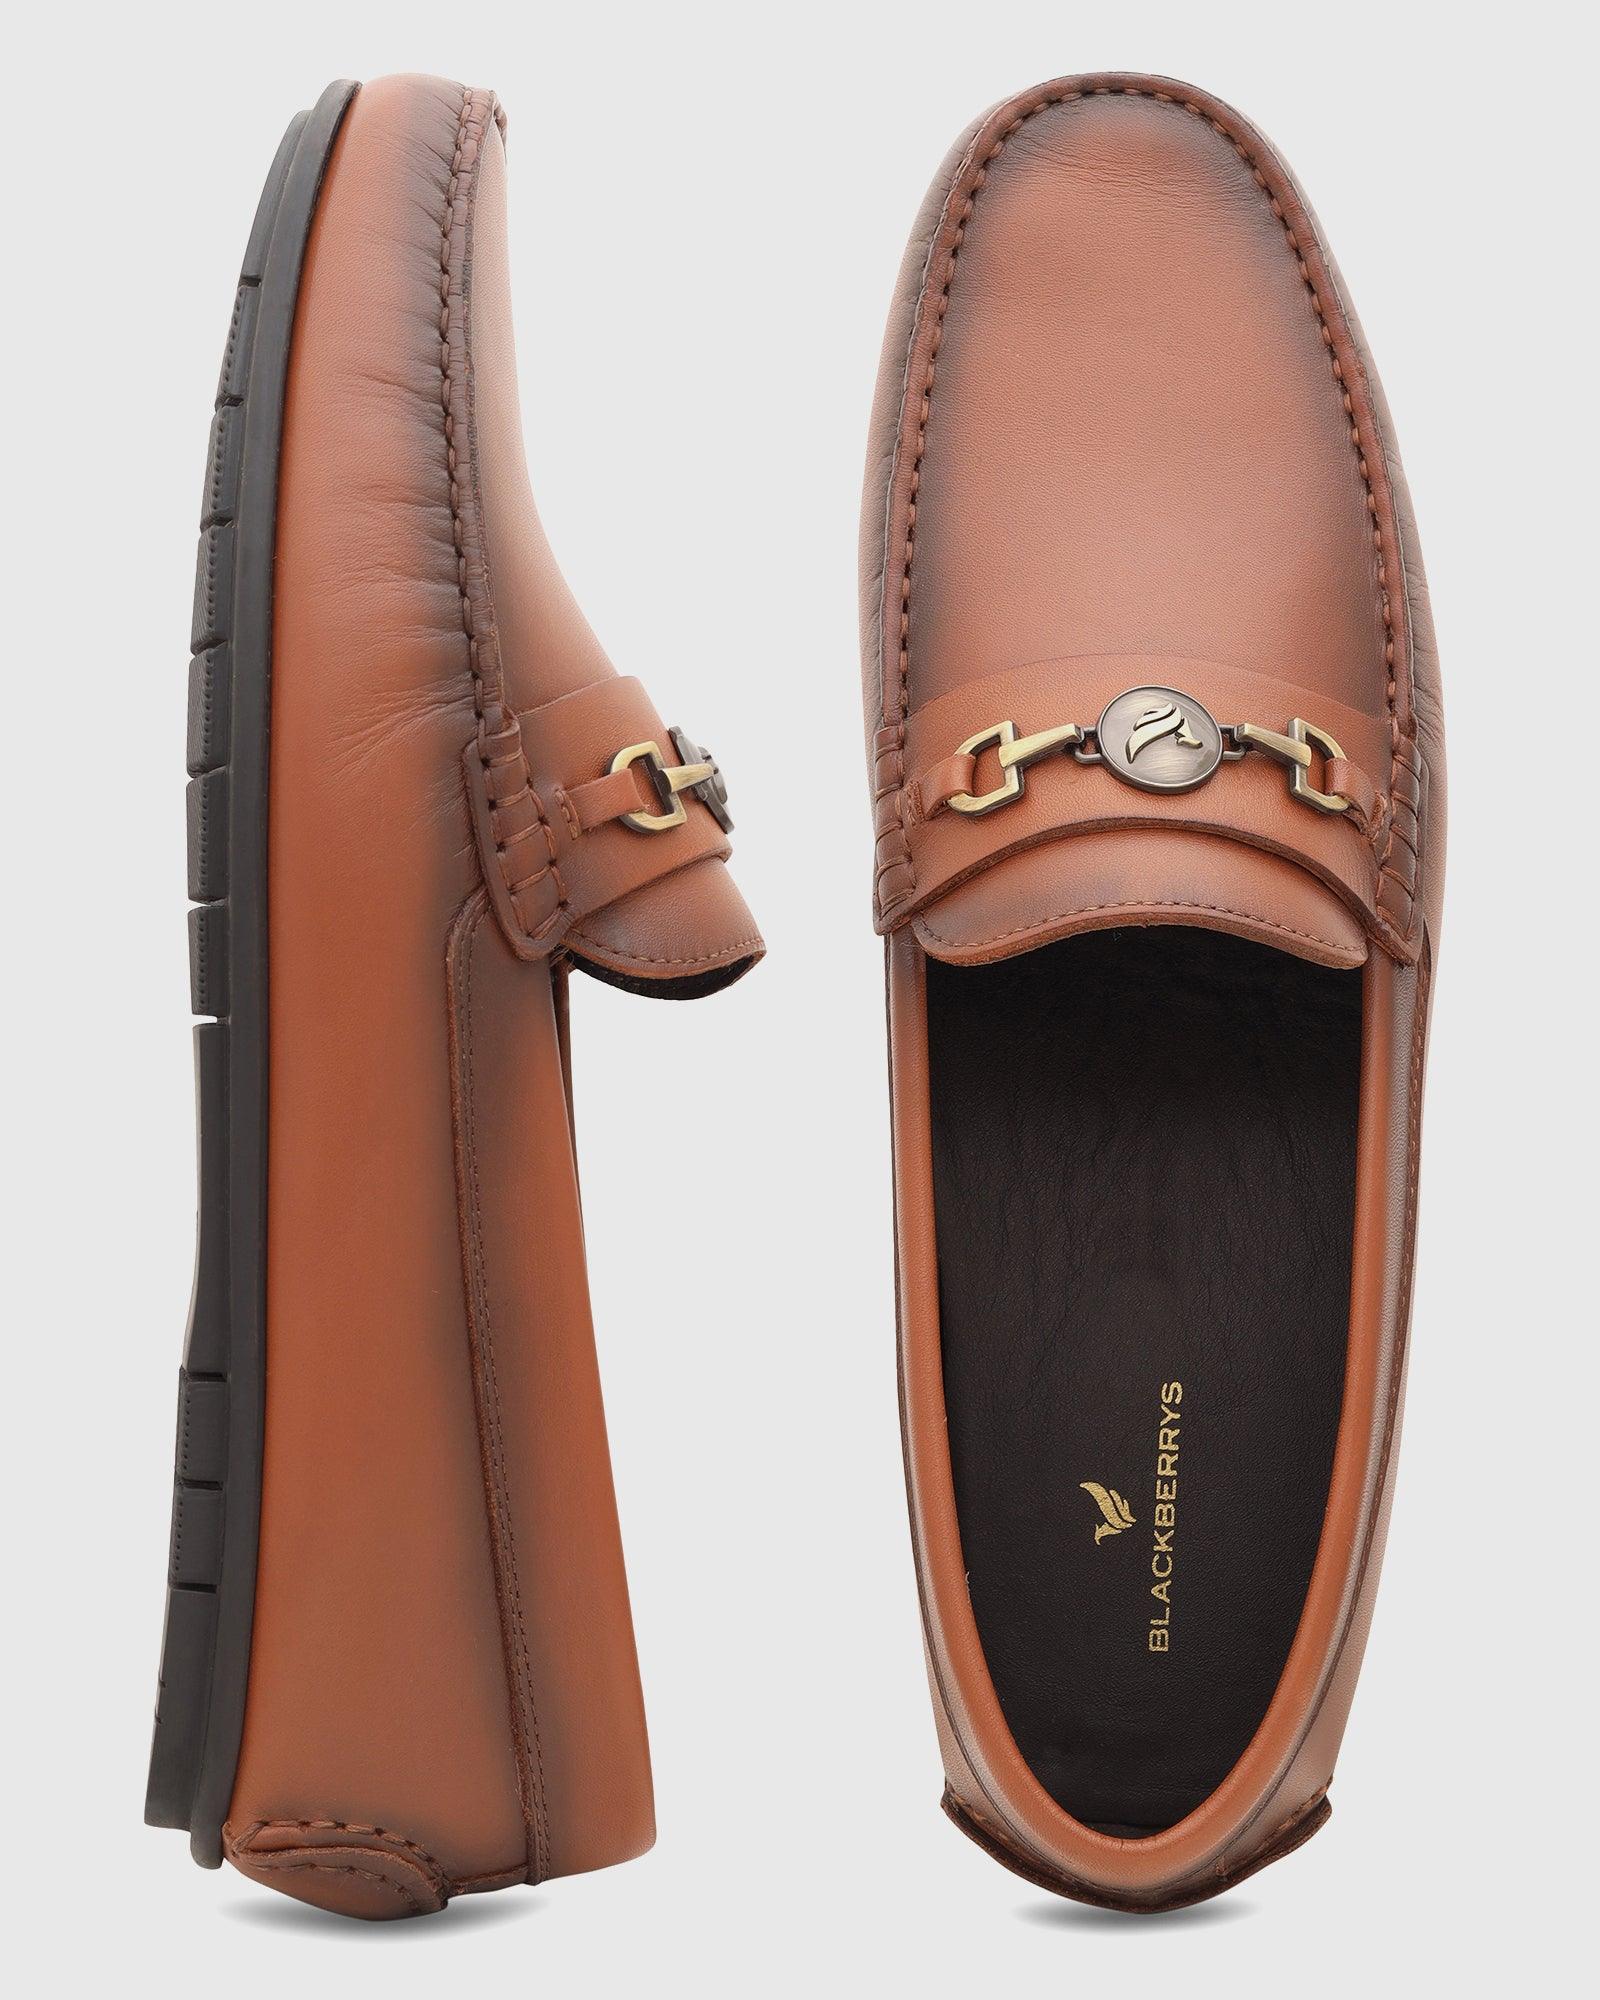 Attitudist Glossy Brown High Heel Tassel Loafers For Men - ATTITUDIST